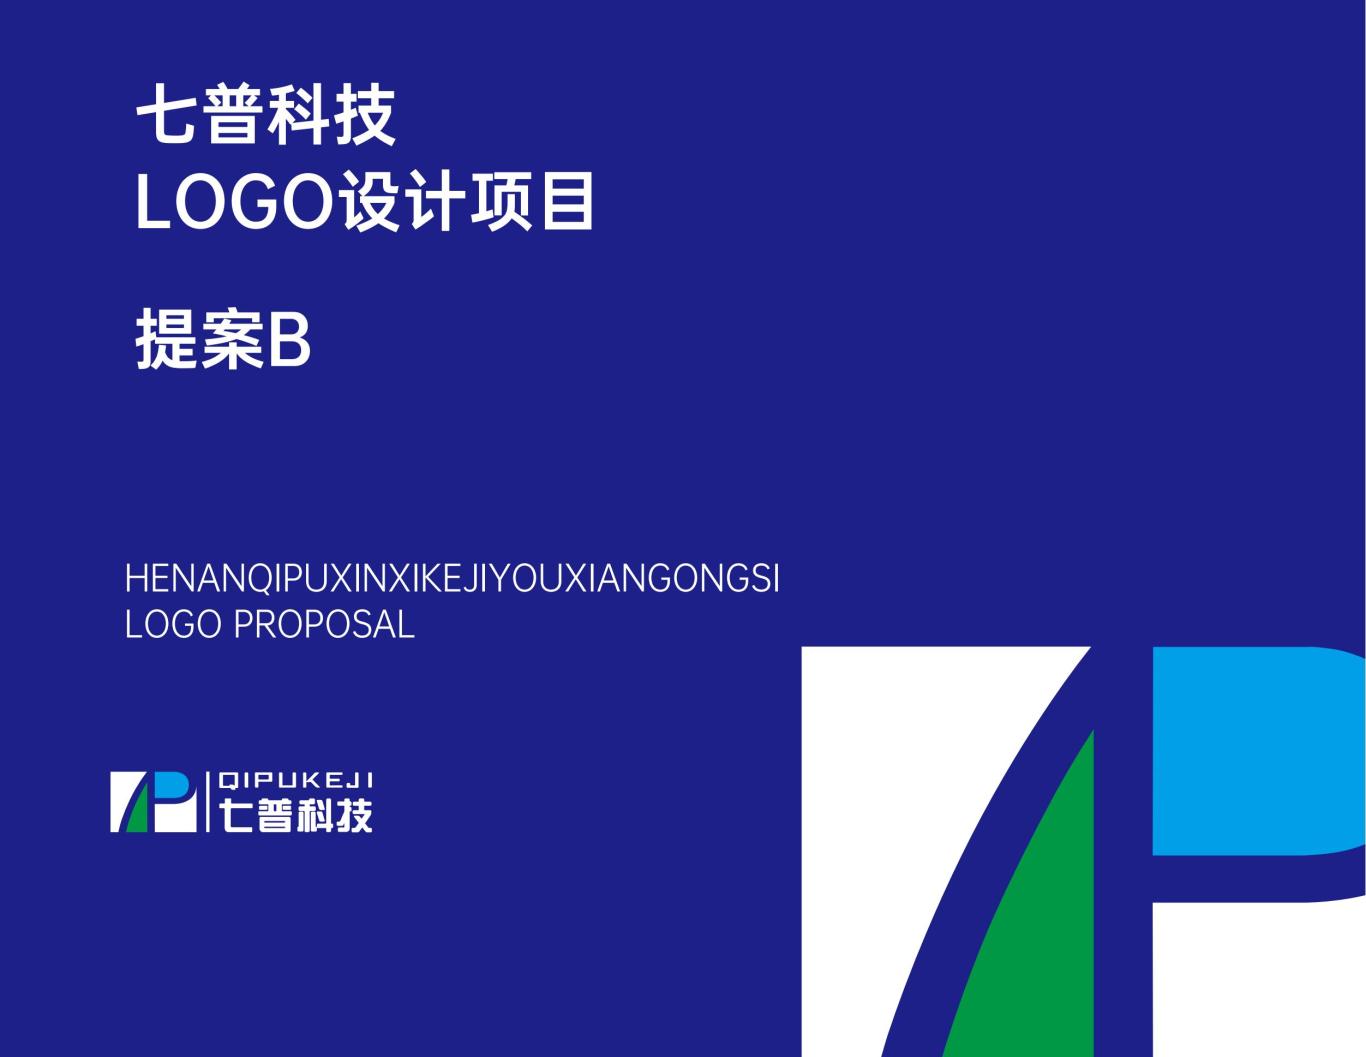 河南七普信息科技有限公司logo提案B图0